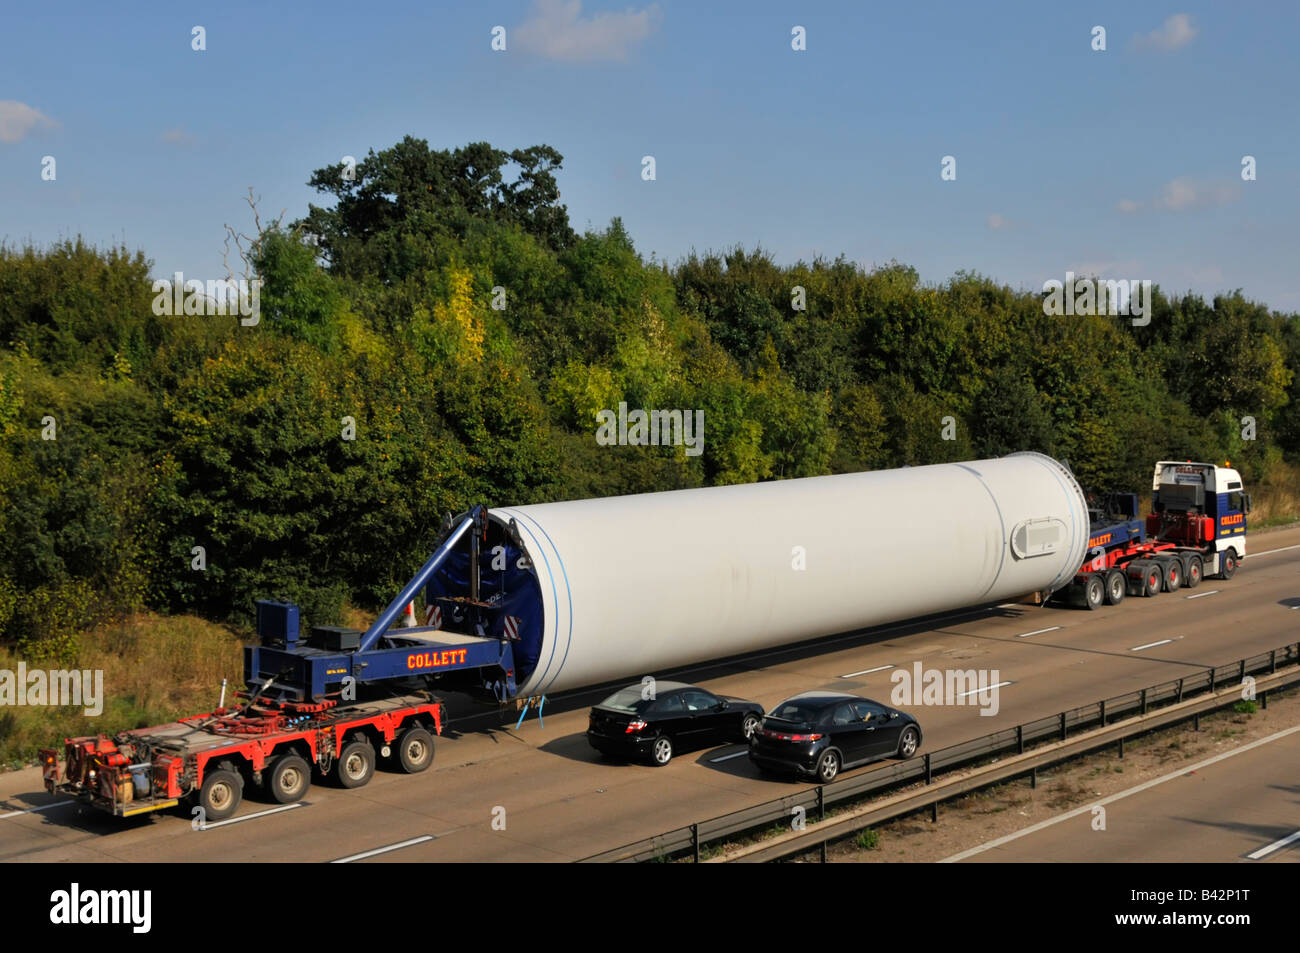 Collett Langlasttransport Spezialisten bewegen große Übergröße & abnormal Flaschenladung Sendung entlang der autobahn m25 England UK Stockfoto